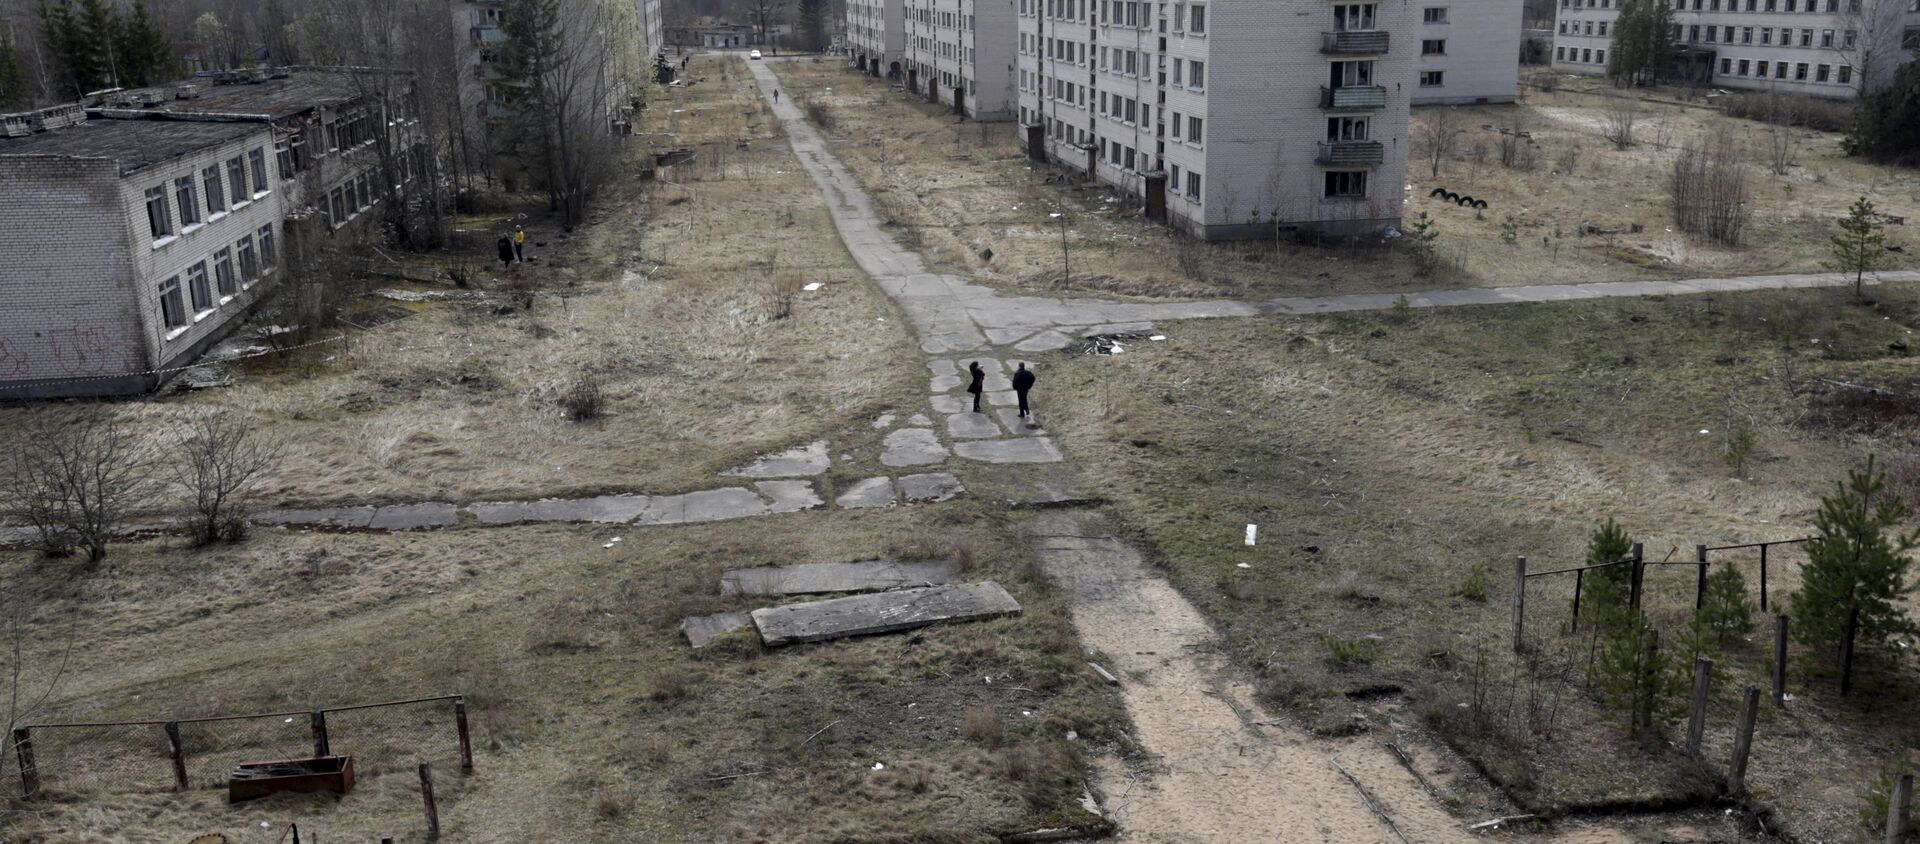 La vista de una ciudad abandonada en las cercanias de Skrunda, Letonia - Sputnik Mundo, 1920, 08.06.2018